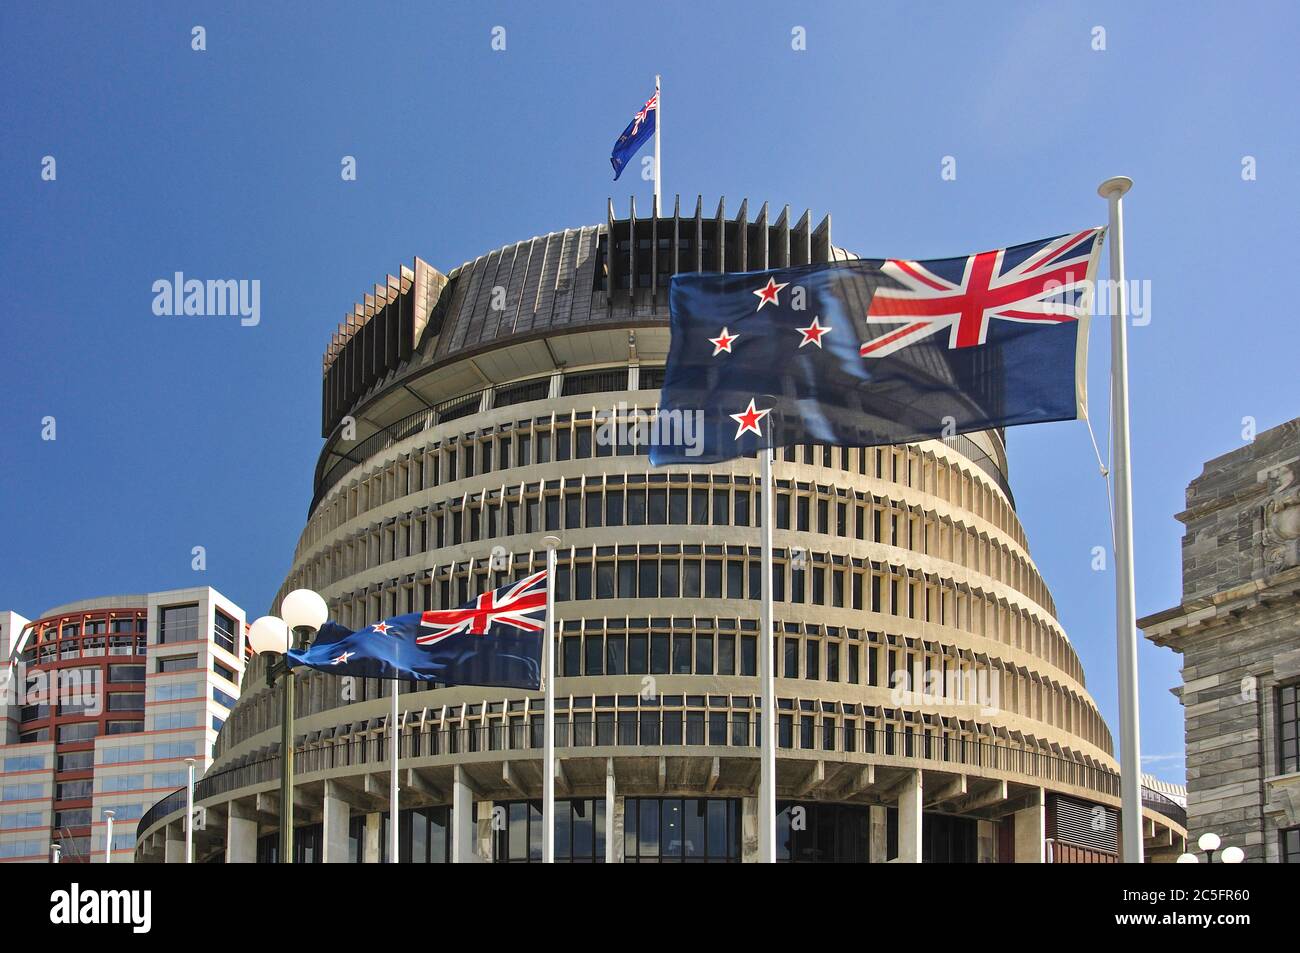 Bâtiment du Parlement du gouvernement de la Nouvelle-Zélande « Beehive ». Lambton Quay, Wellington, Île du Nord, Nouvelle-Zélande Banque D'Images